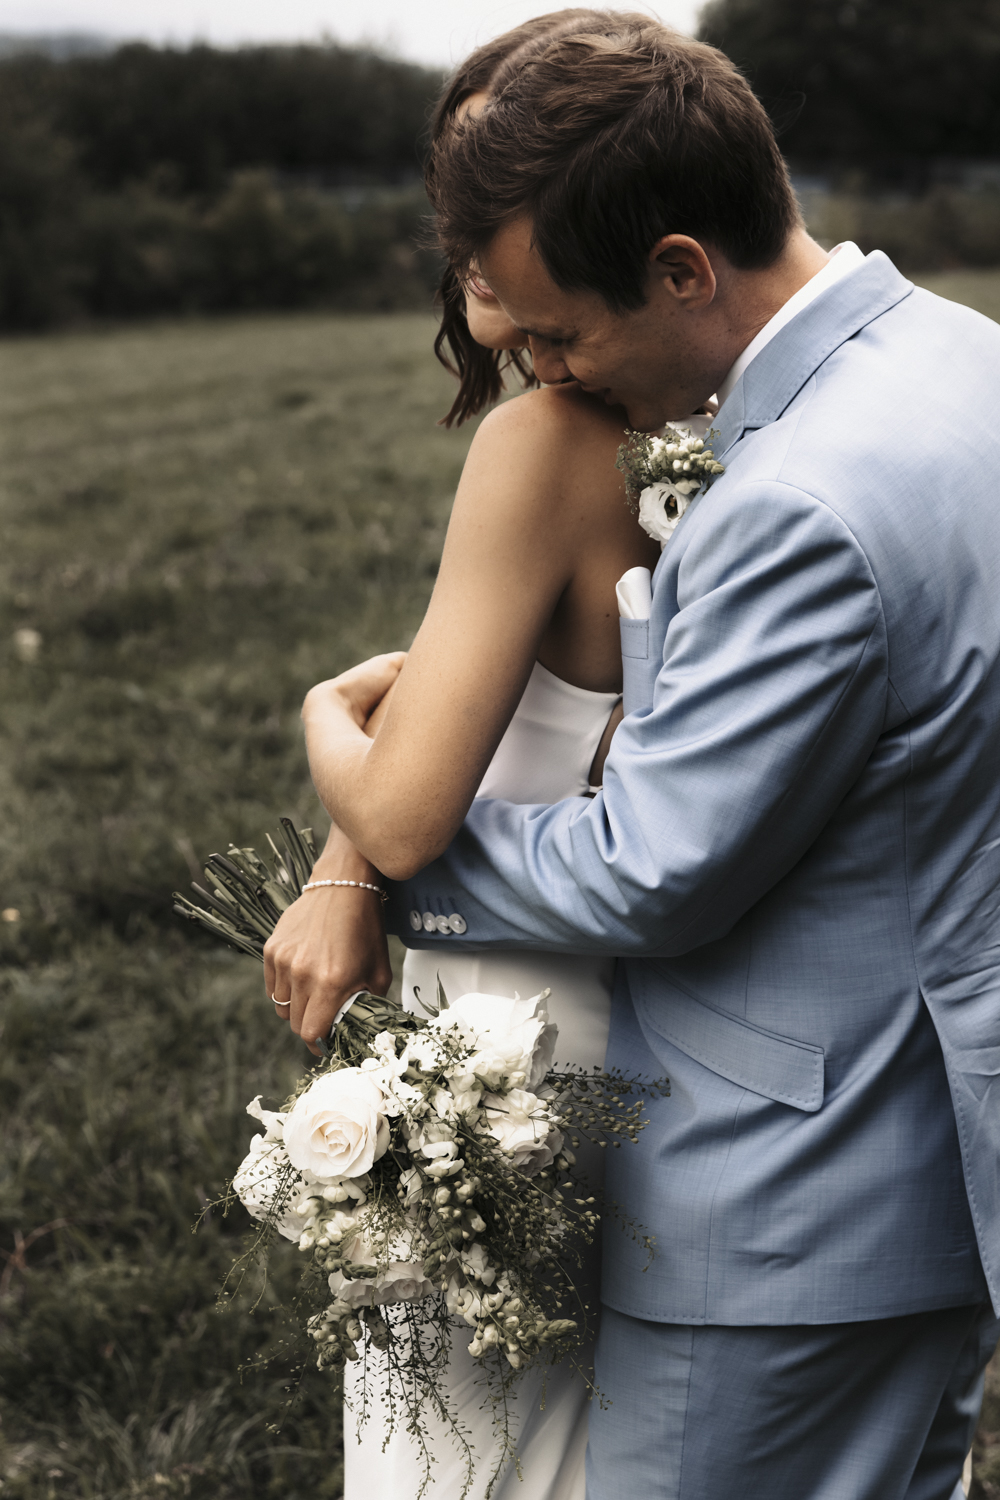 Brautpaarshooting - Ehemann und Ehefrau - Braut und Bräutigam tanzen zusammen, Küssen sich, schauen sich an, halten Hände, umarmen sich, zeigen ihre Outfits.